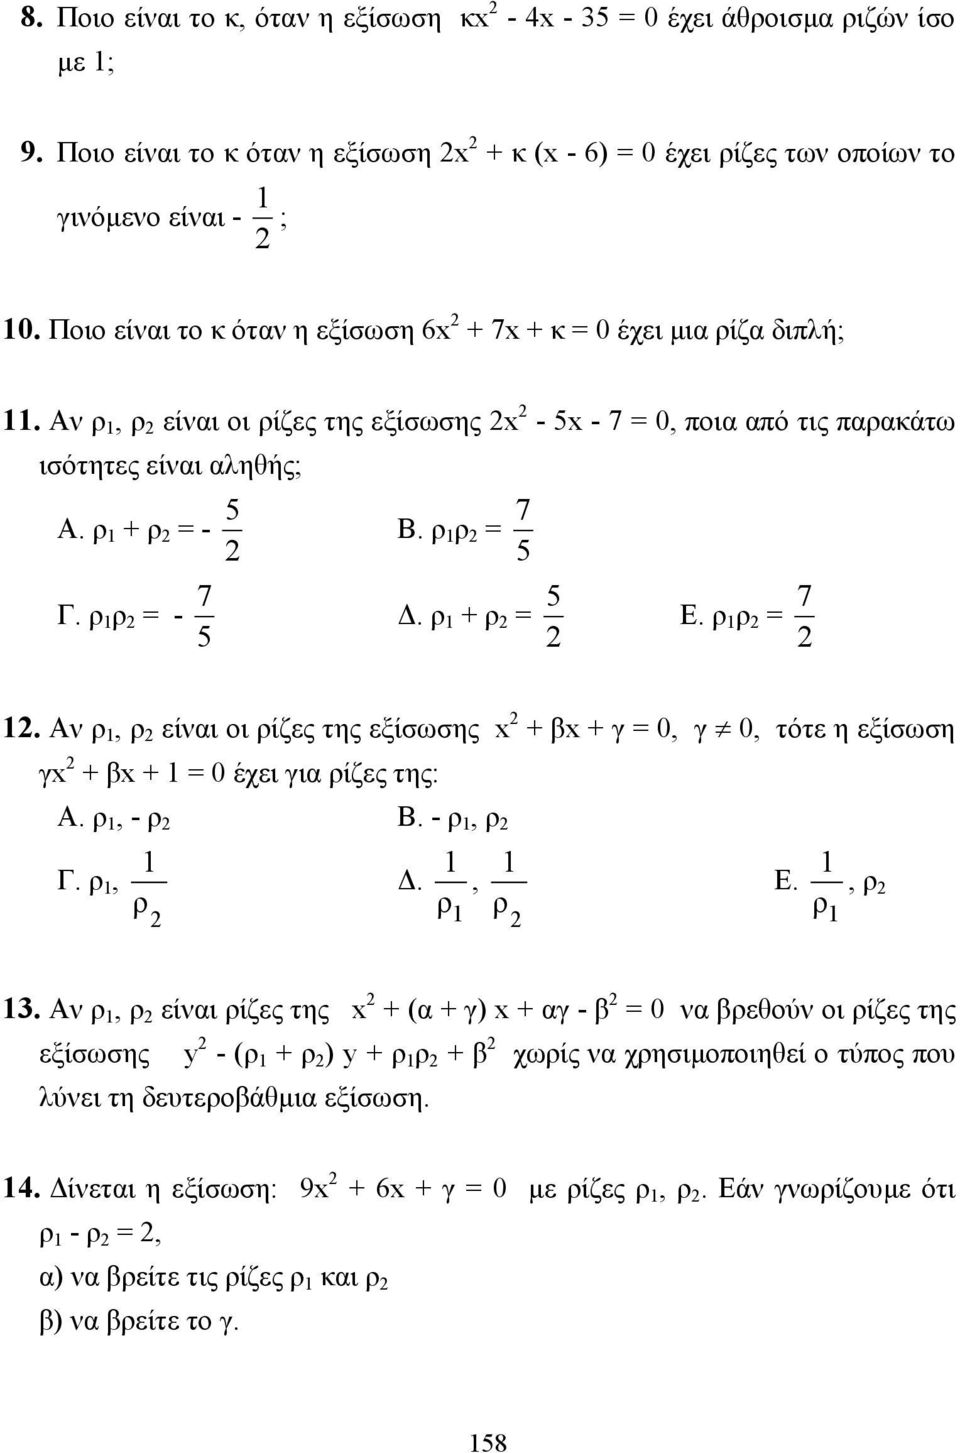 ρ 1 ρ = - 5 7. ρ 1 + ρ = 5 Ε. ρ 1 ρ = 7 1. Αν ρ 1, ρ είναι οι ρίζες της εξίσωσης + β + γ = 0, γ 0, τότε η εξίσωση γ + β + 1 = 0 έχει για ρίζες της: Α. ρ 1, - ρ Β. - ρ 1, ρ 1 1 1 Γ. ρ 1,., ρ ρ 1 ρ Ε.